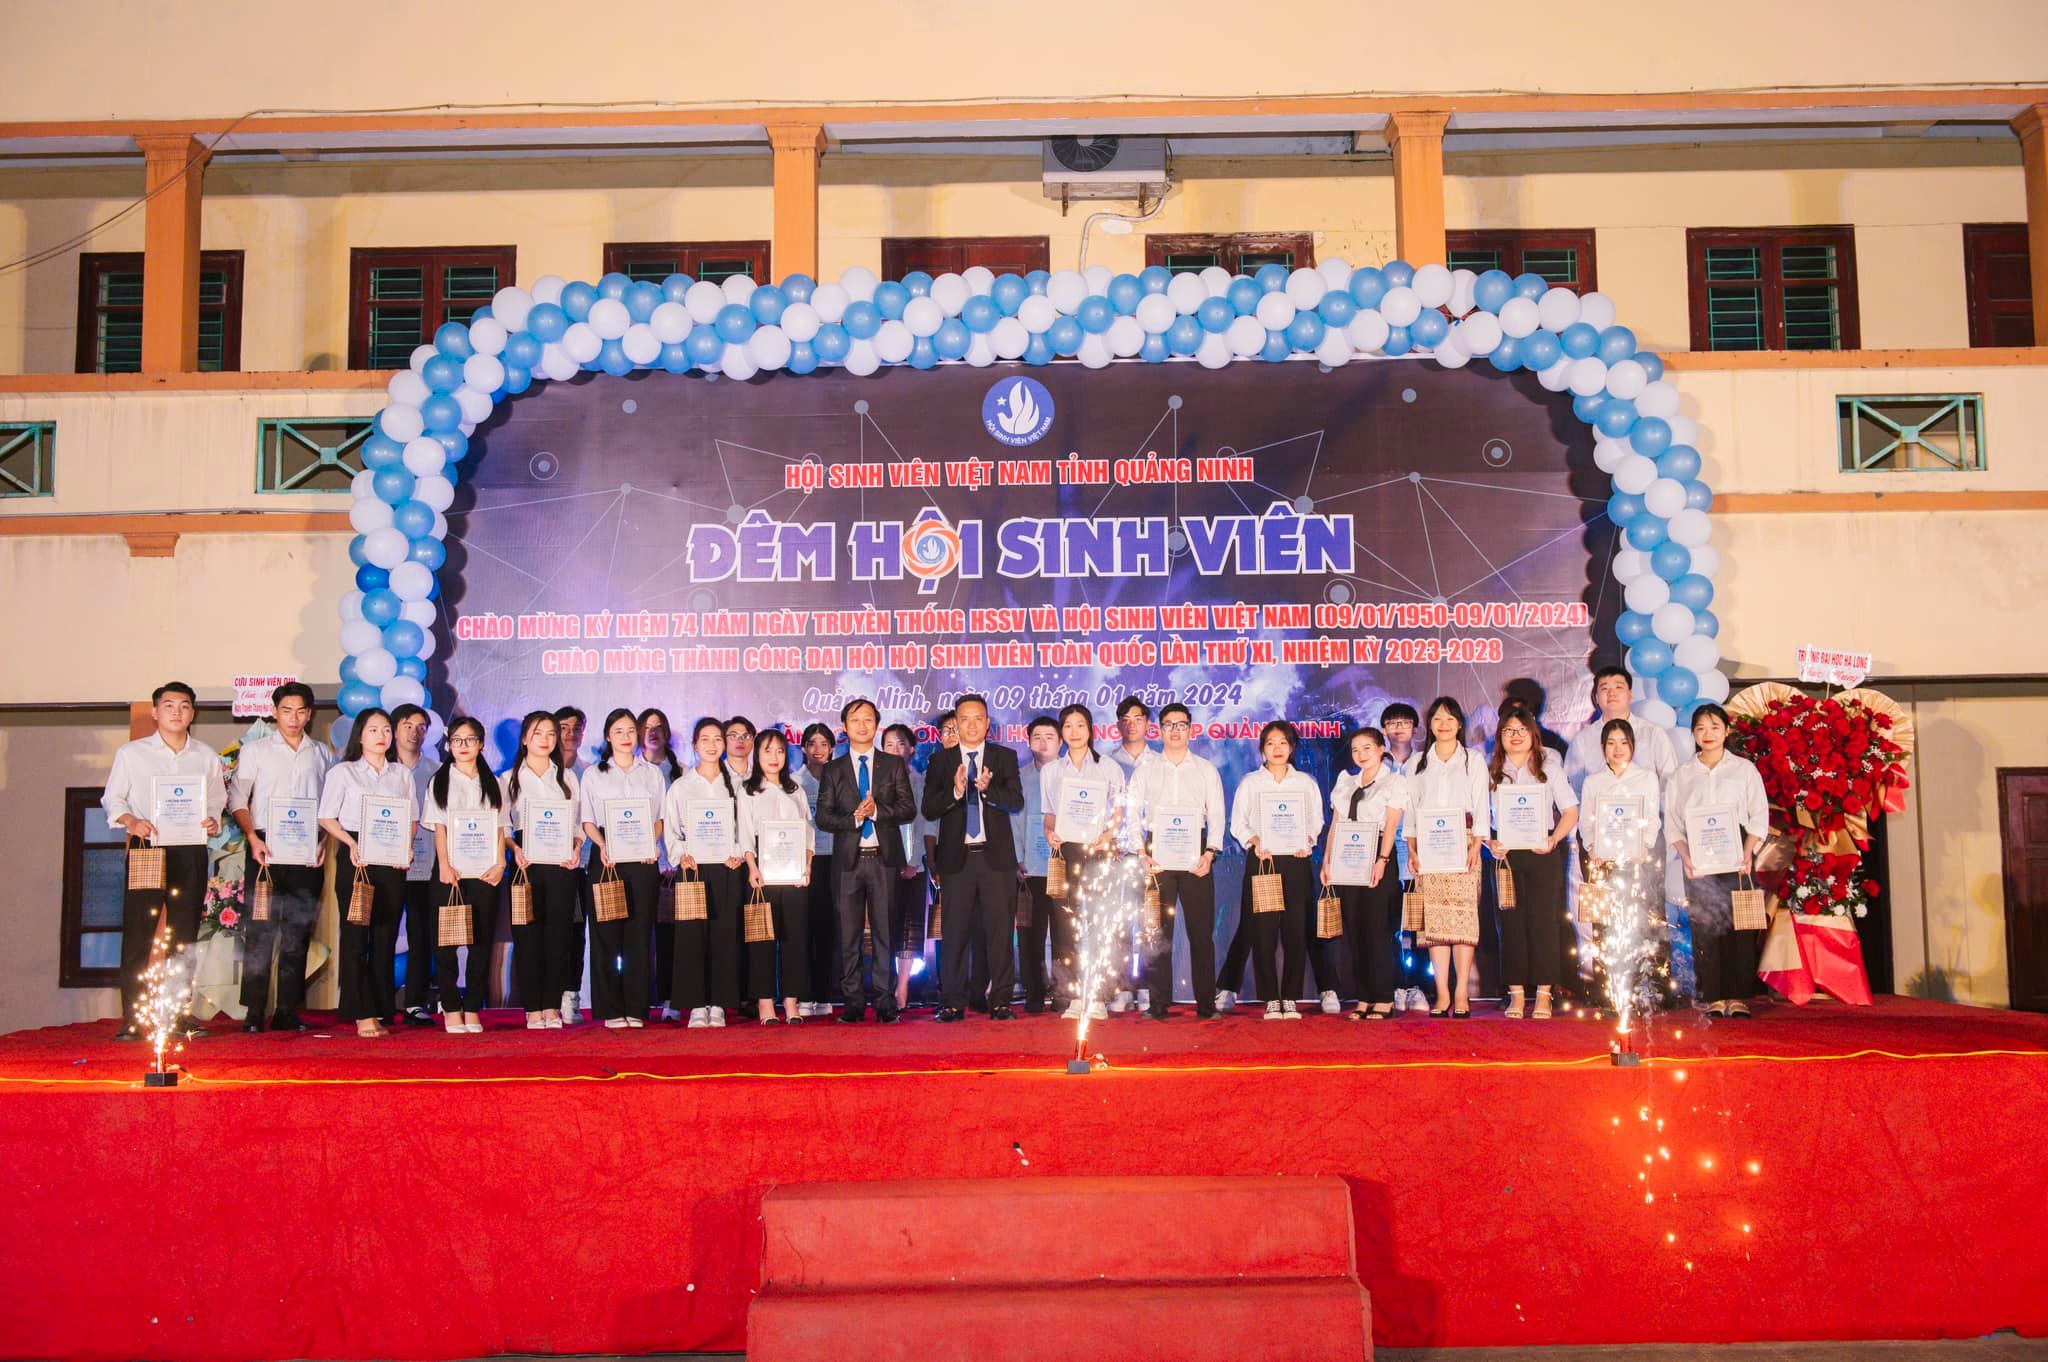 Hội sinh viên Trường Đại học Công Nghiệp Quảng Ninh tổ chức chương trình "Đêm hội sinh viên" chào mừng 74 năm ngày truyền thống HSSV (09/01/1950-09/0//2024)